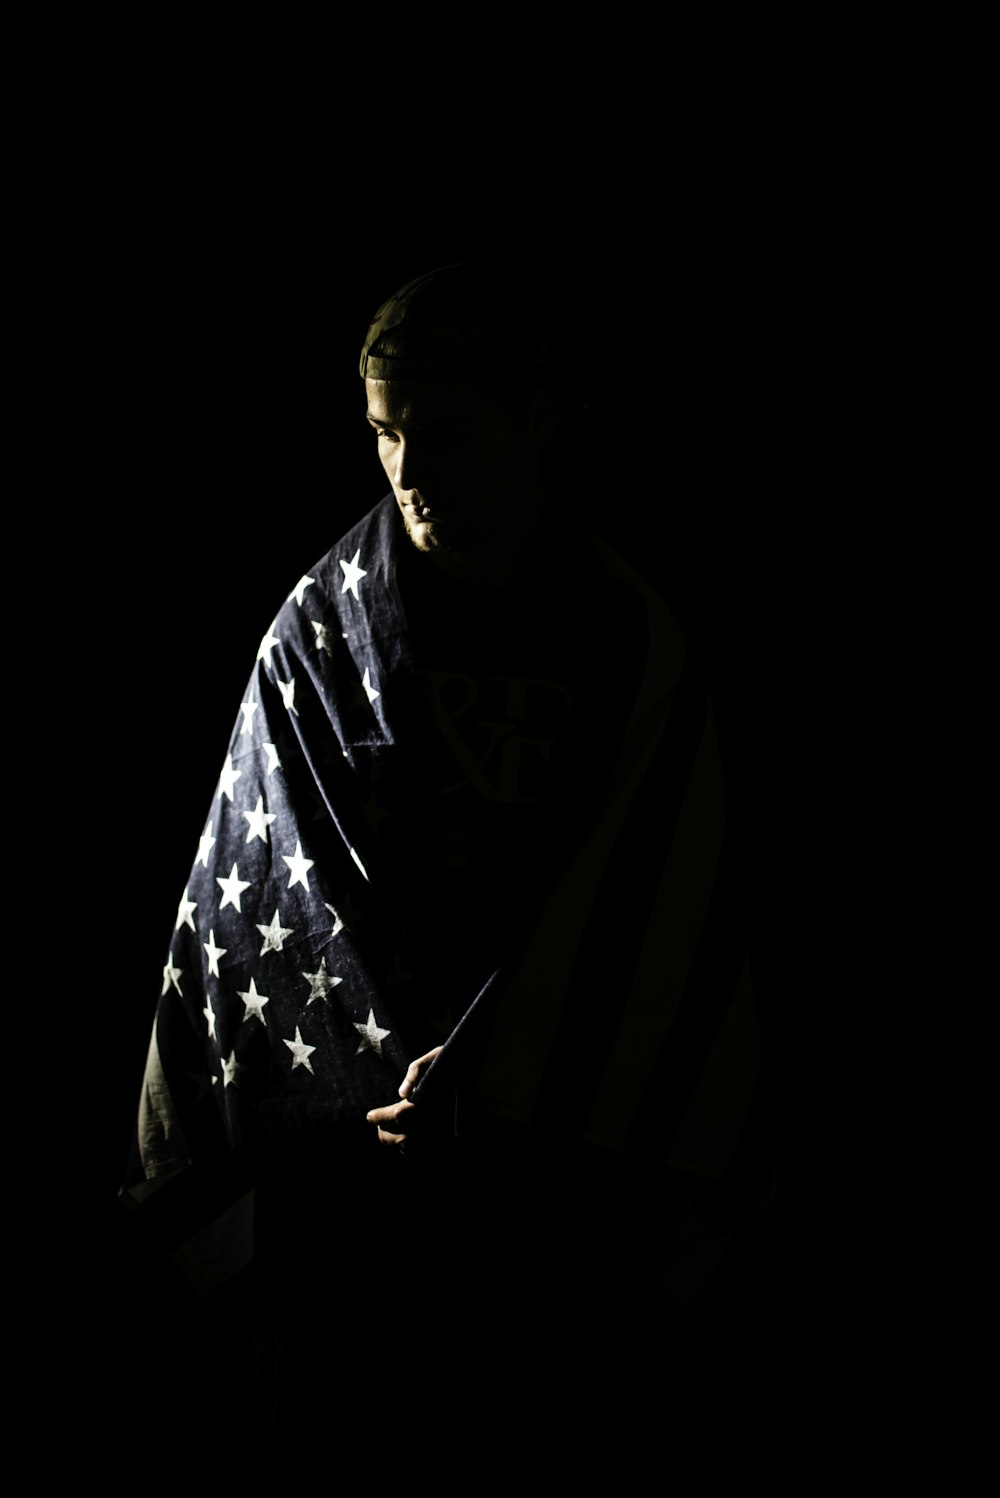 Un hombre envuelto en una bandera estadounidense en la oscuridad